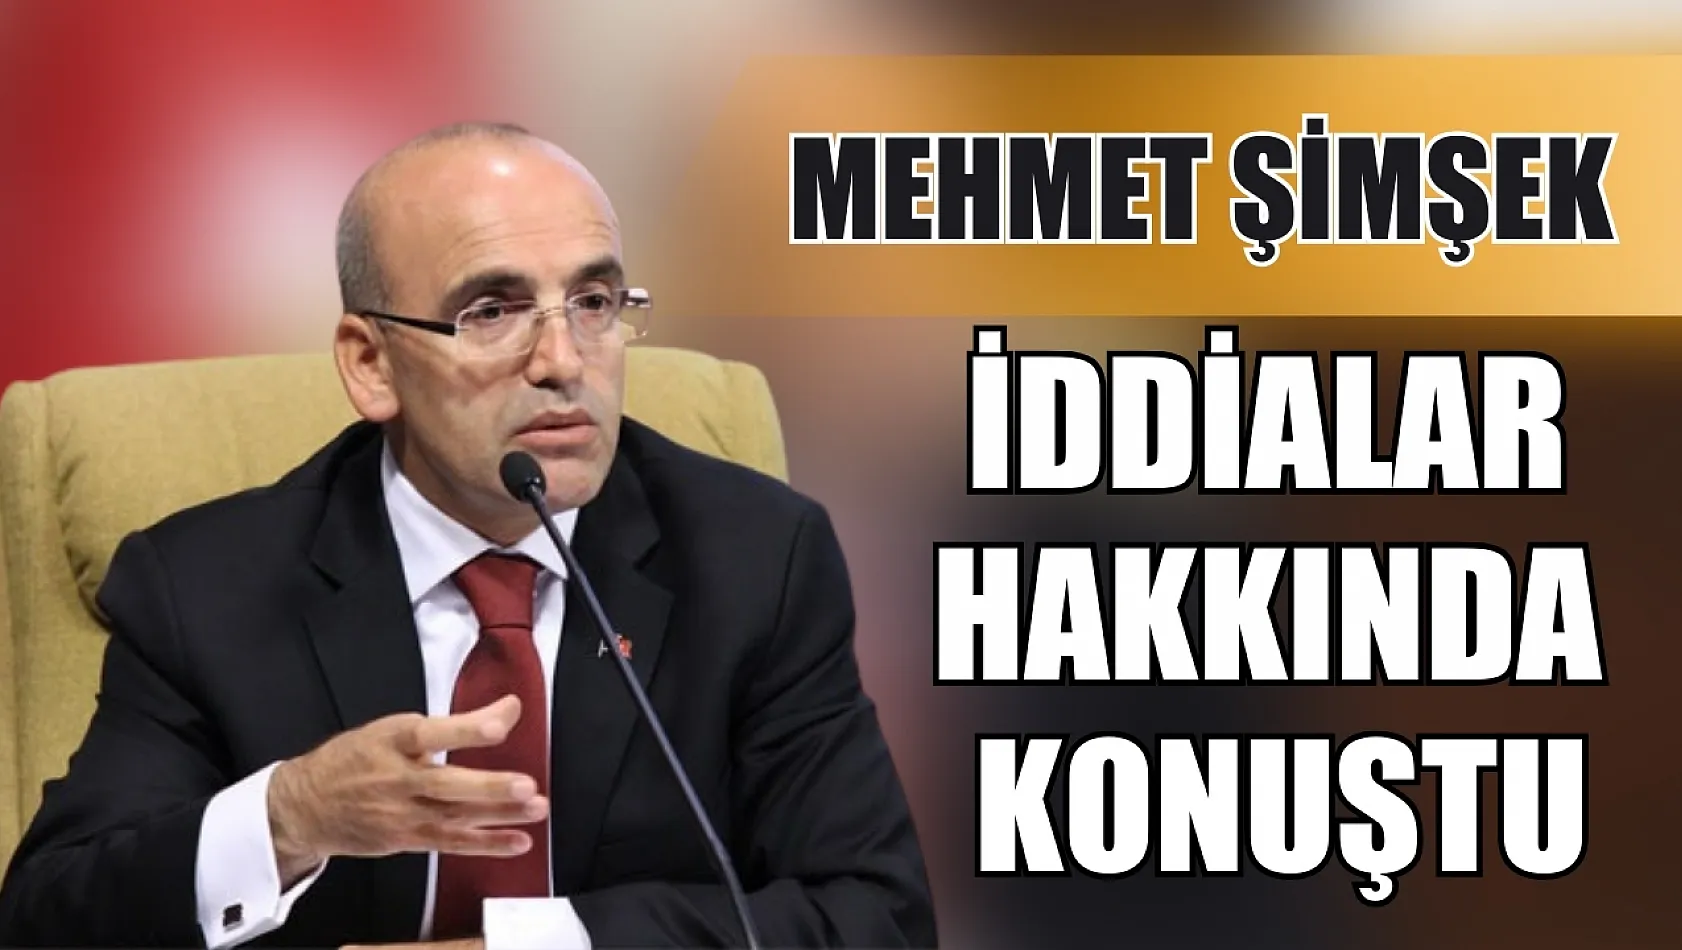 Mehmet Şimşek iddialar hakkında konuştu